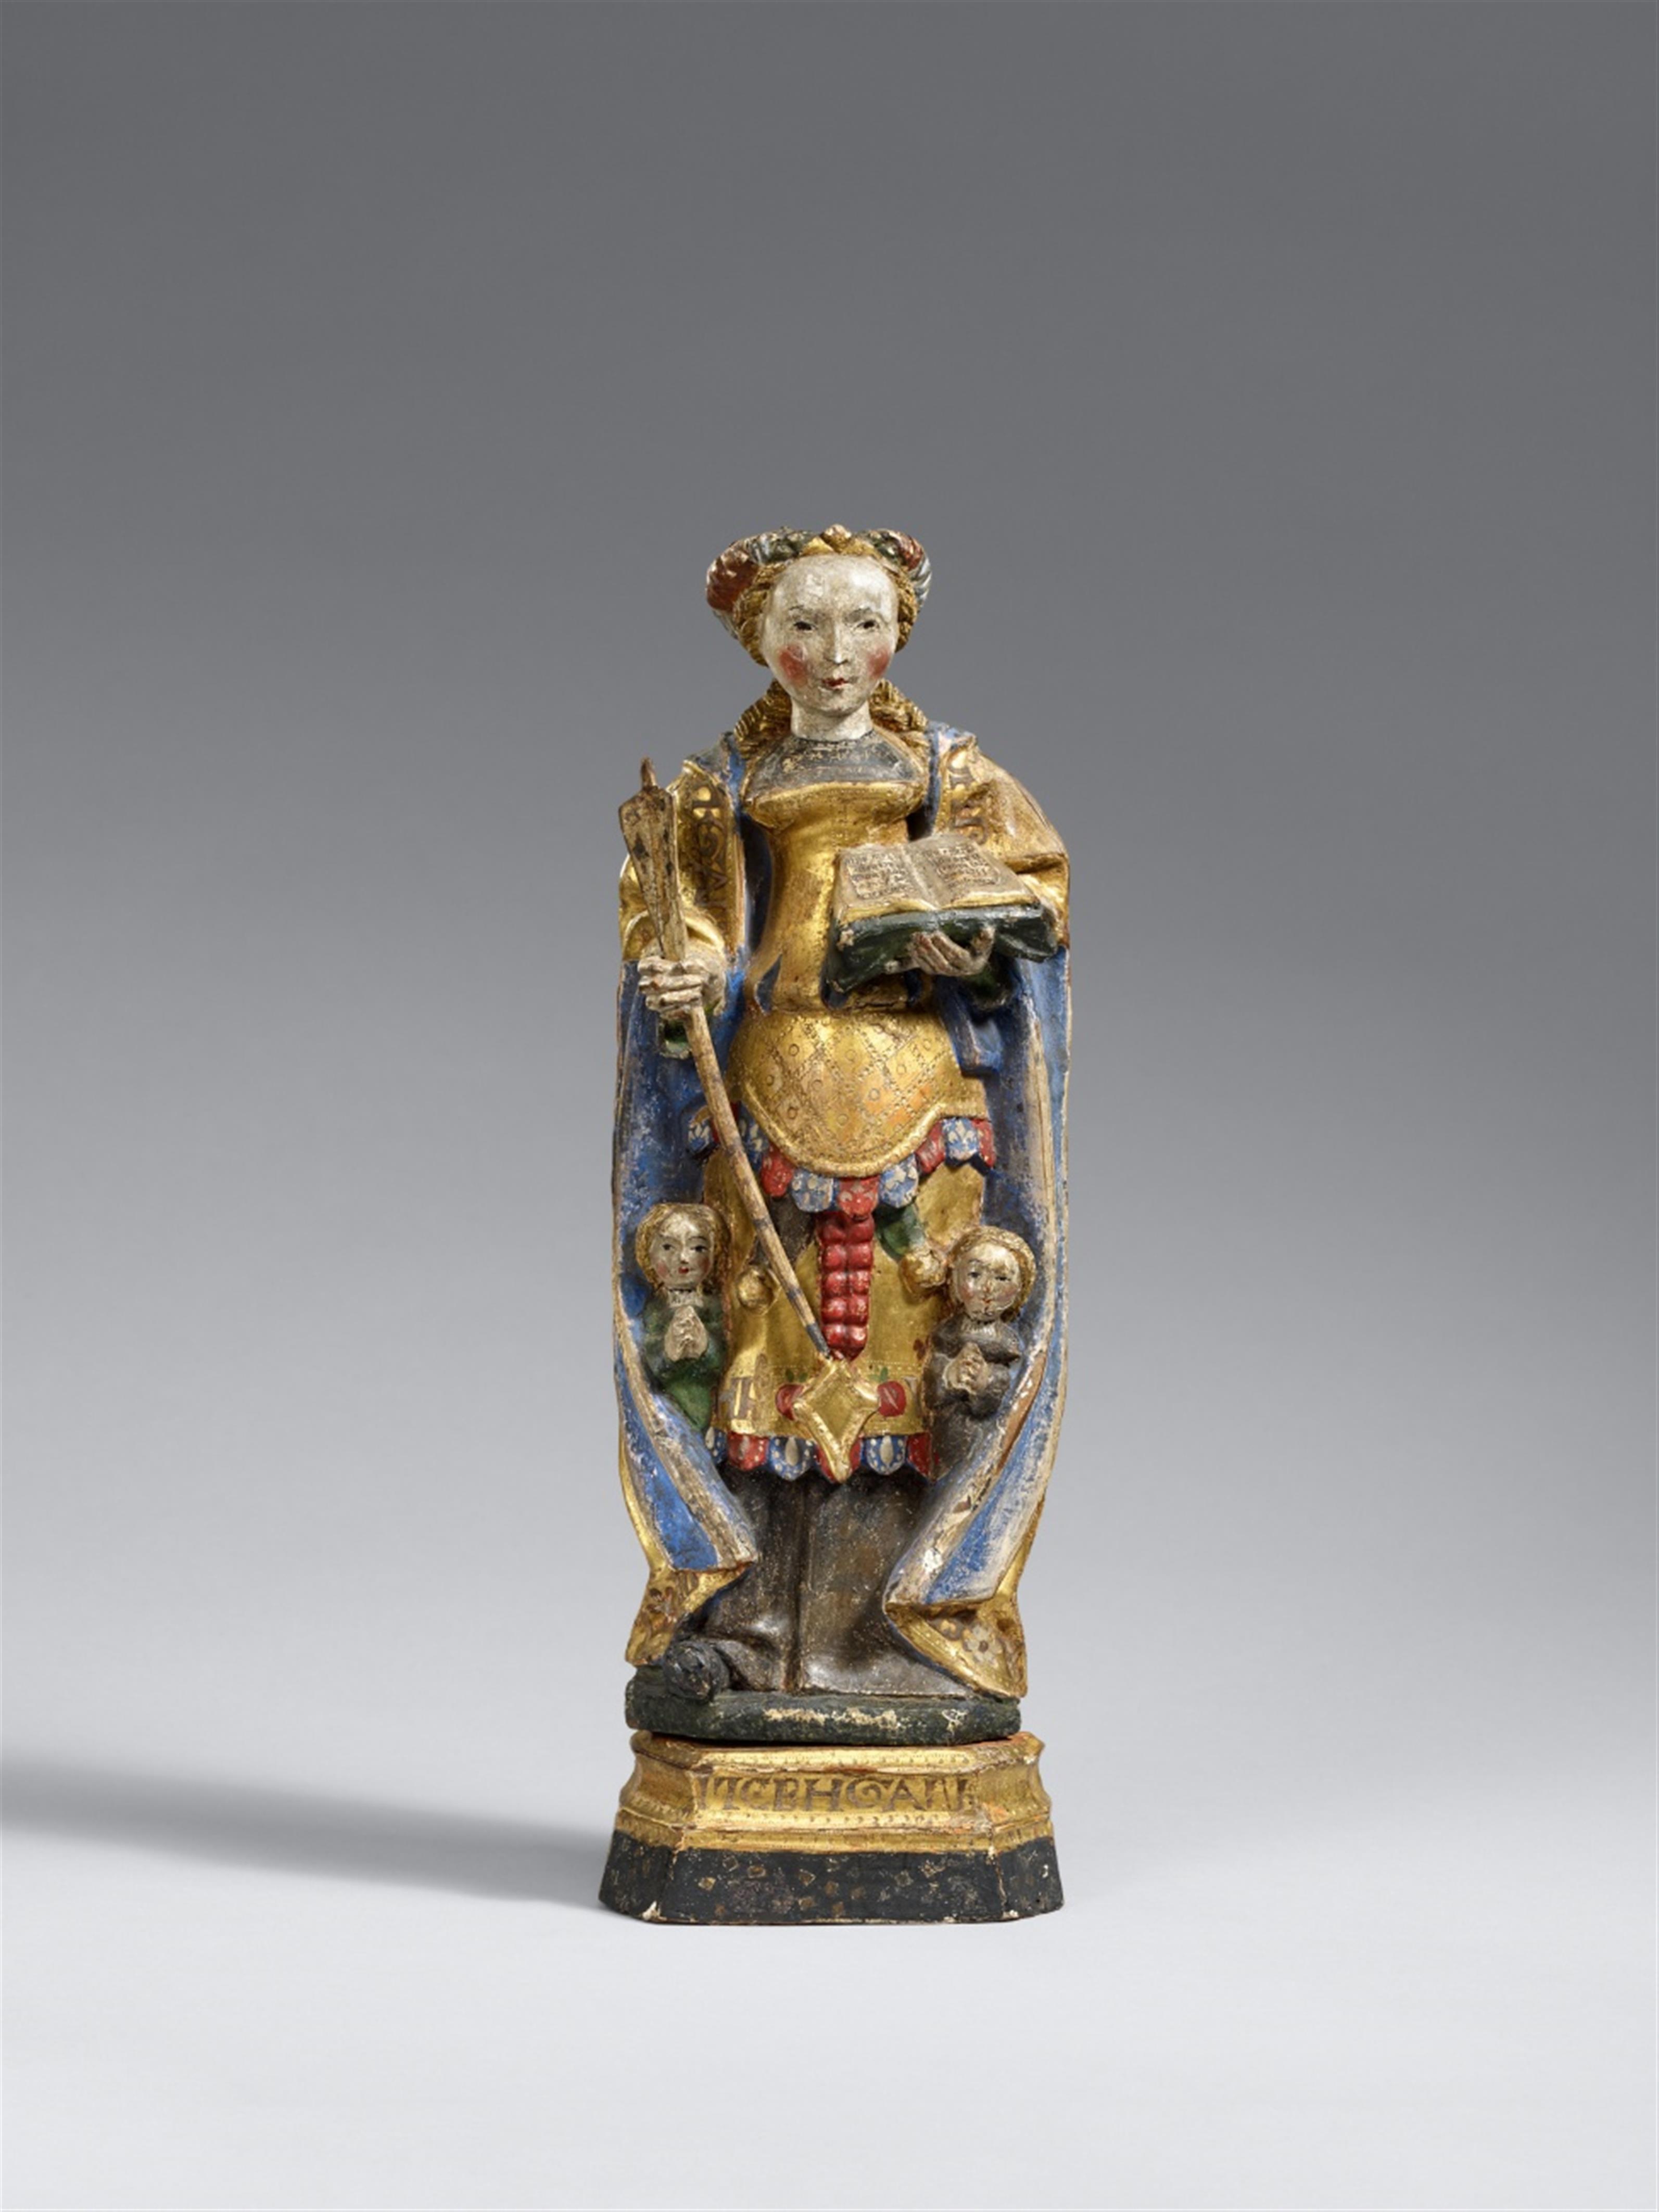 Mechelen circa 1530/1540 - A Mechelen wooden figure of Saint Ursula, circa 1530/1540 - image-1